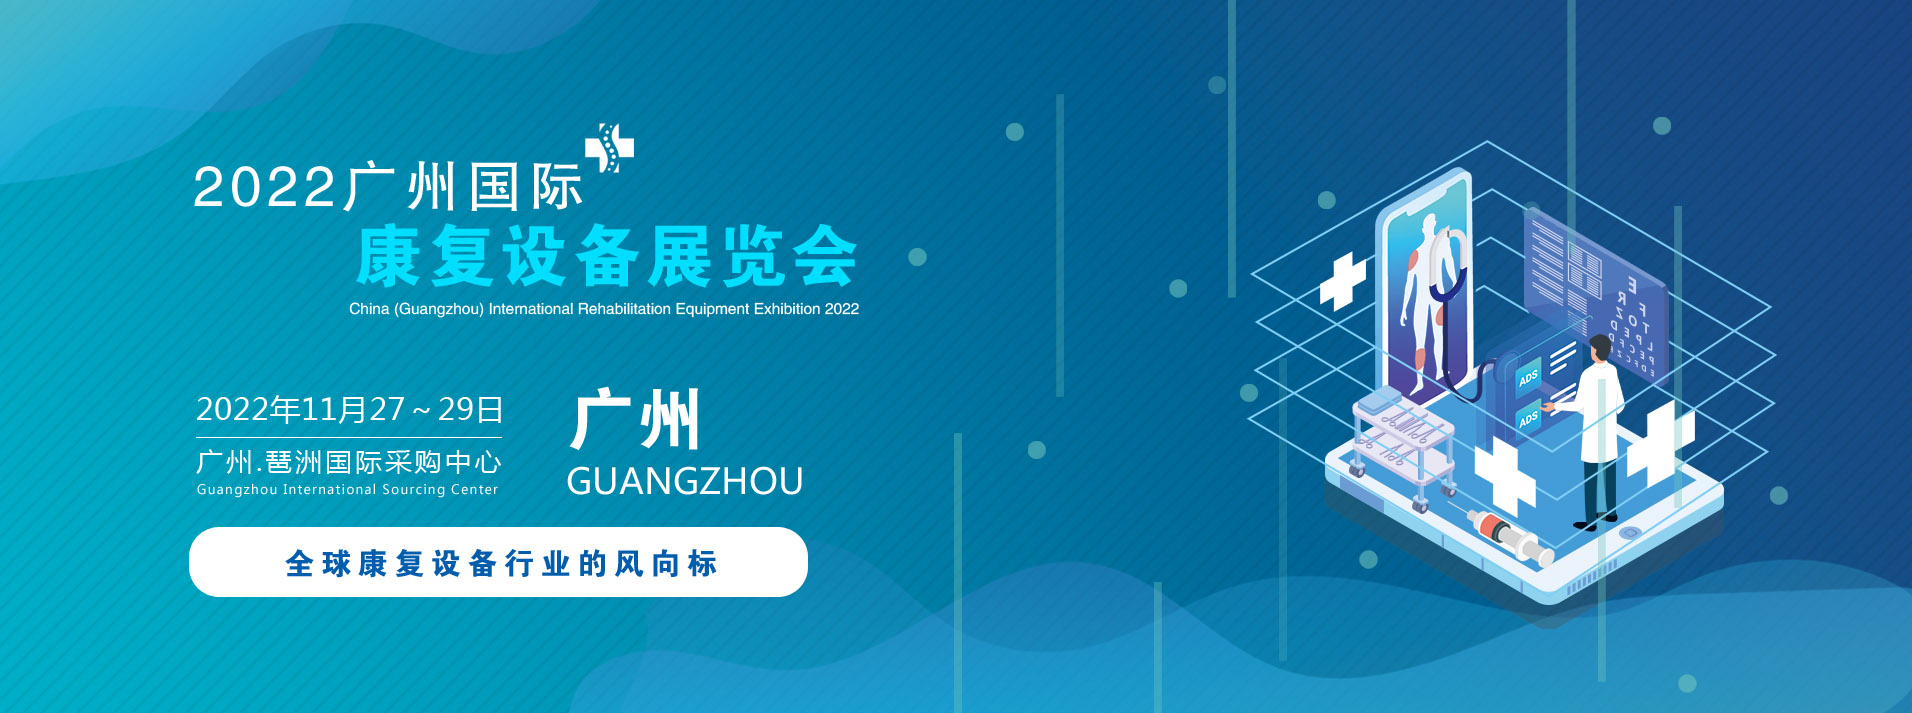 2022中国(广州)国际康复设备展览会